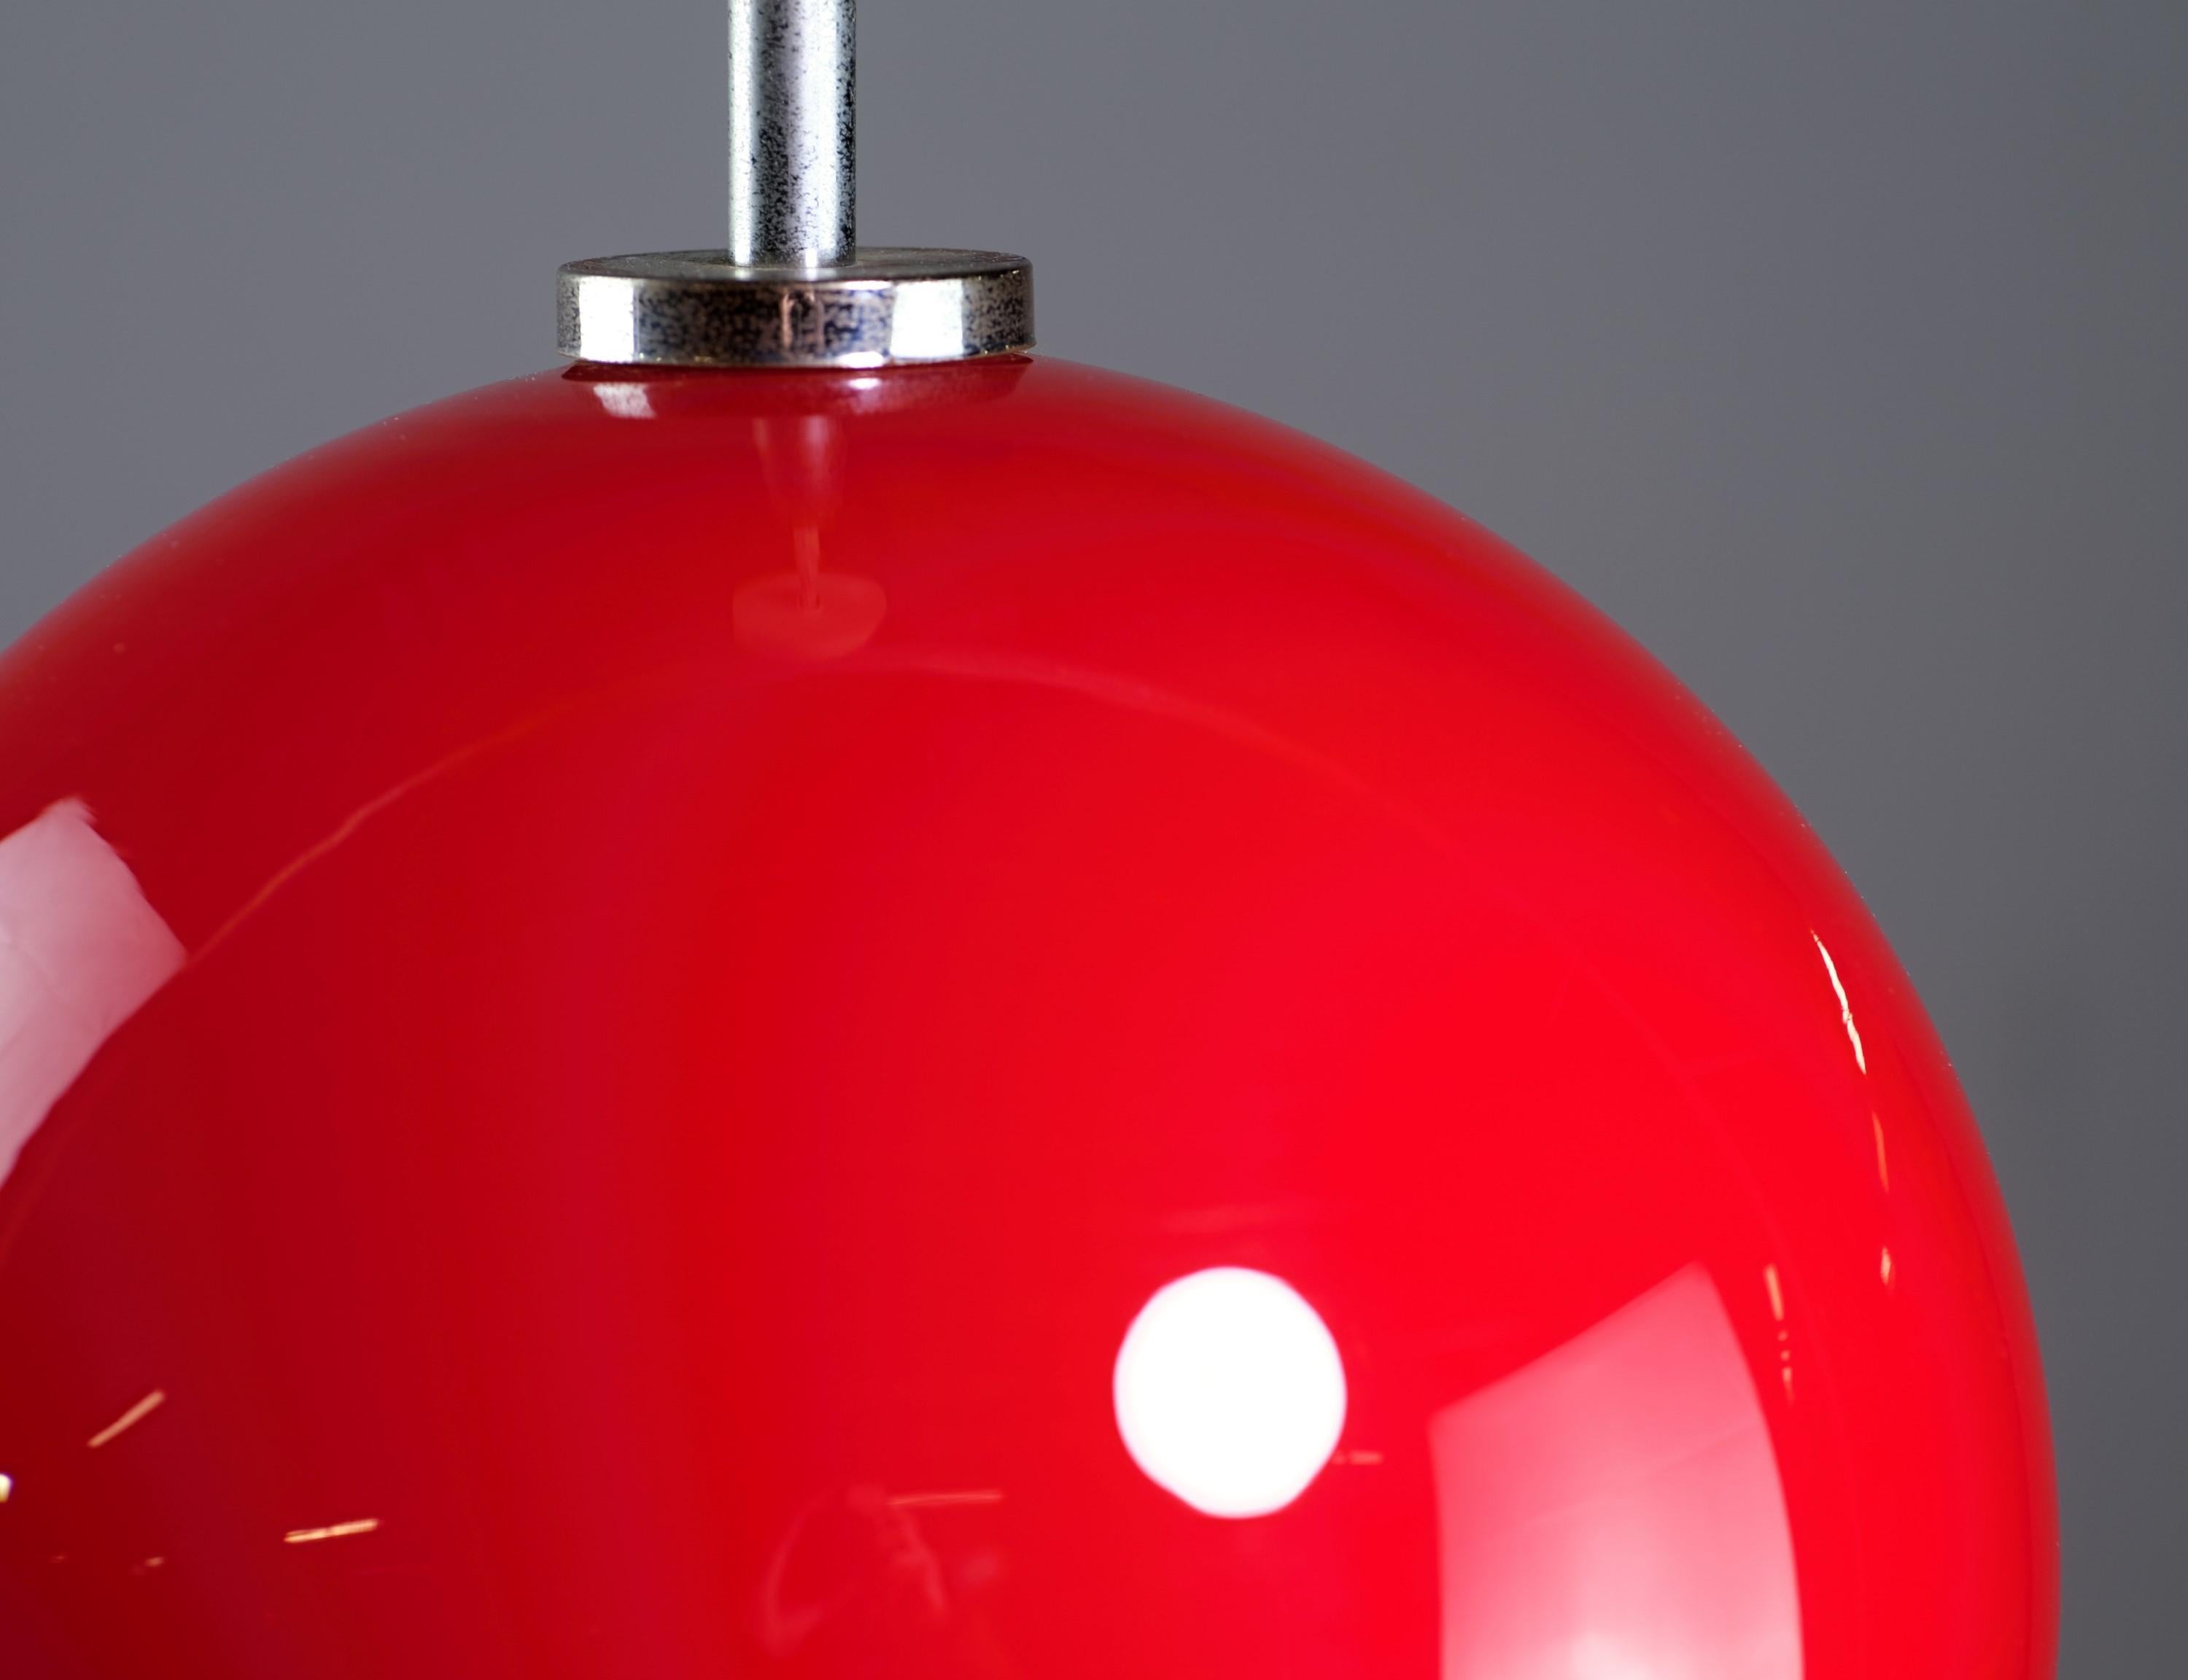 Européen The Moderns Sphere Sphere Light à douille unique en verre rouge